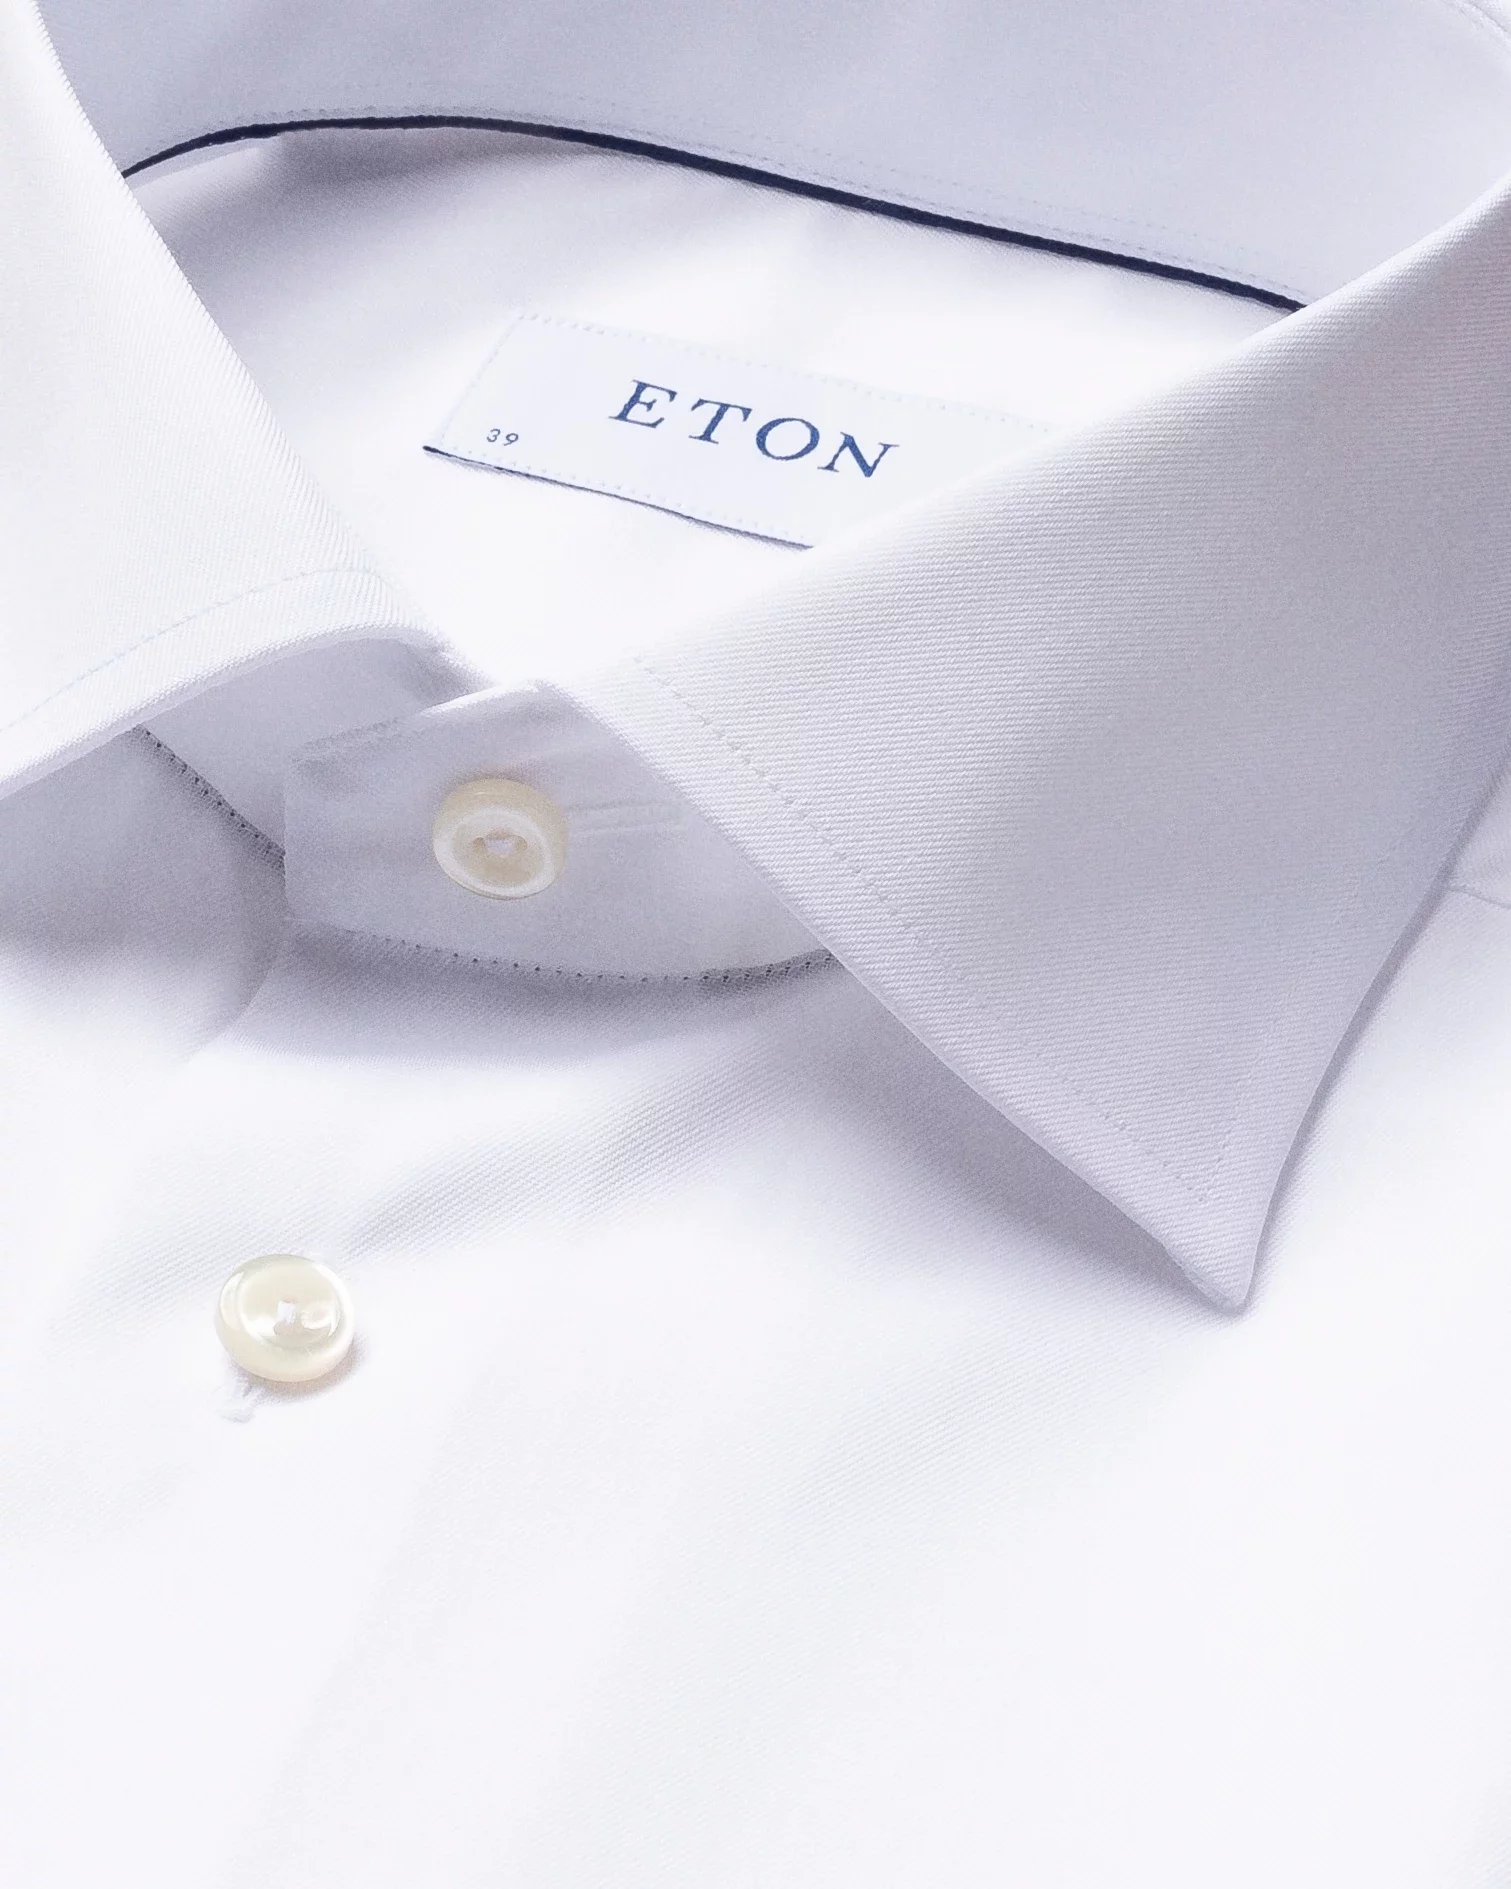 White Signature Twill Shirt – French Cuffs